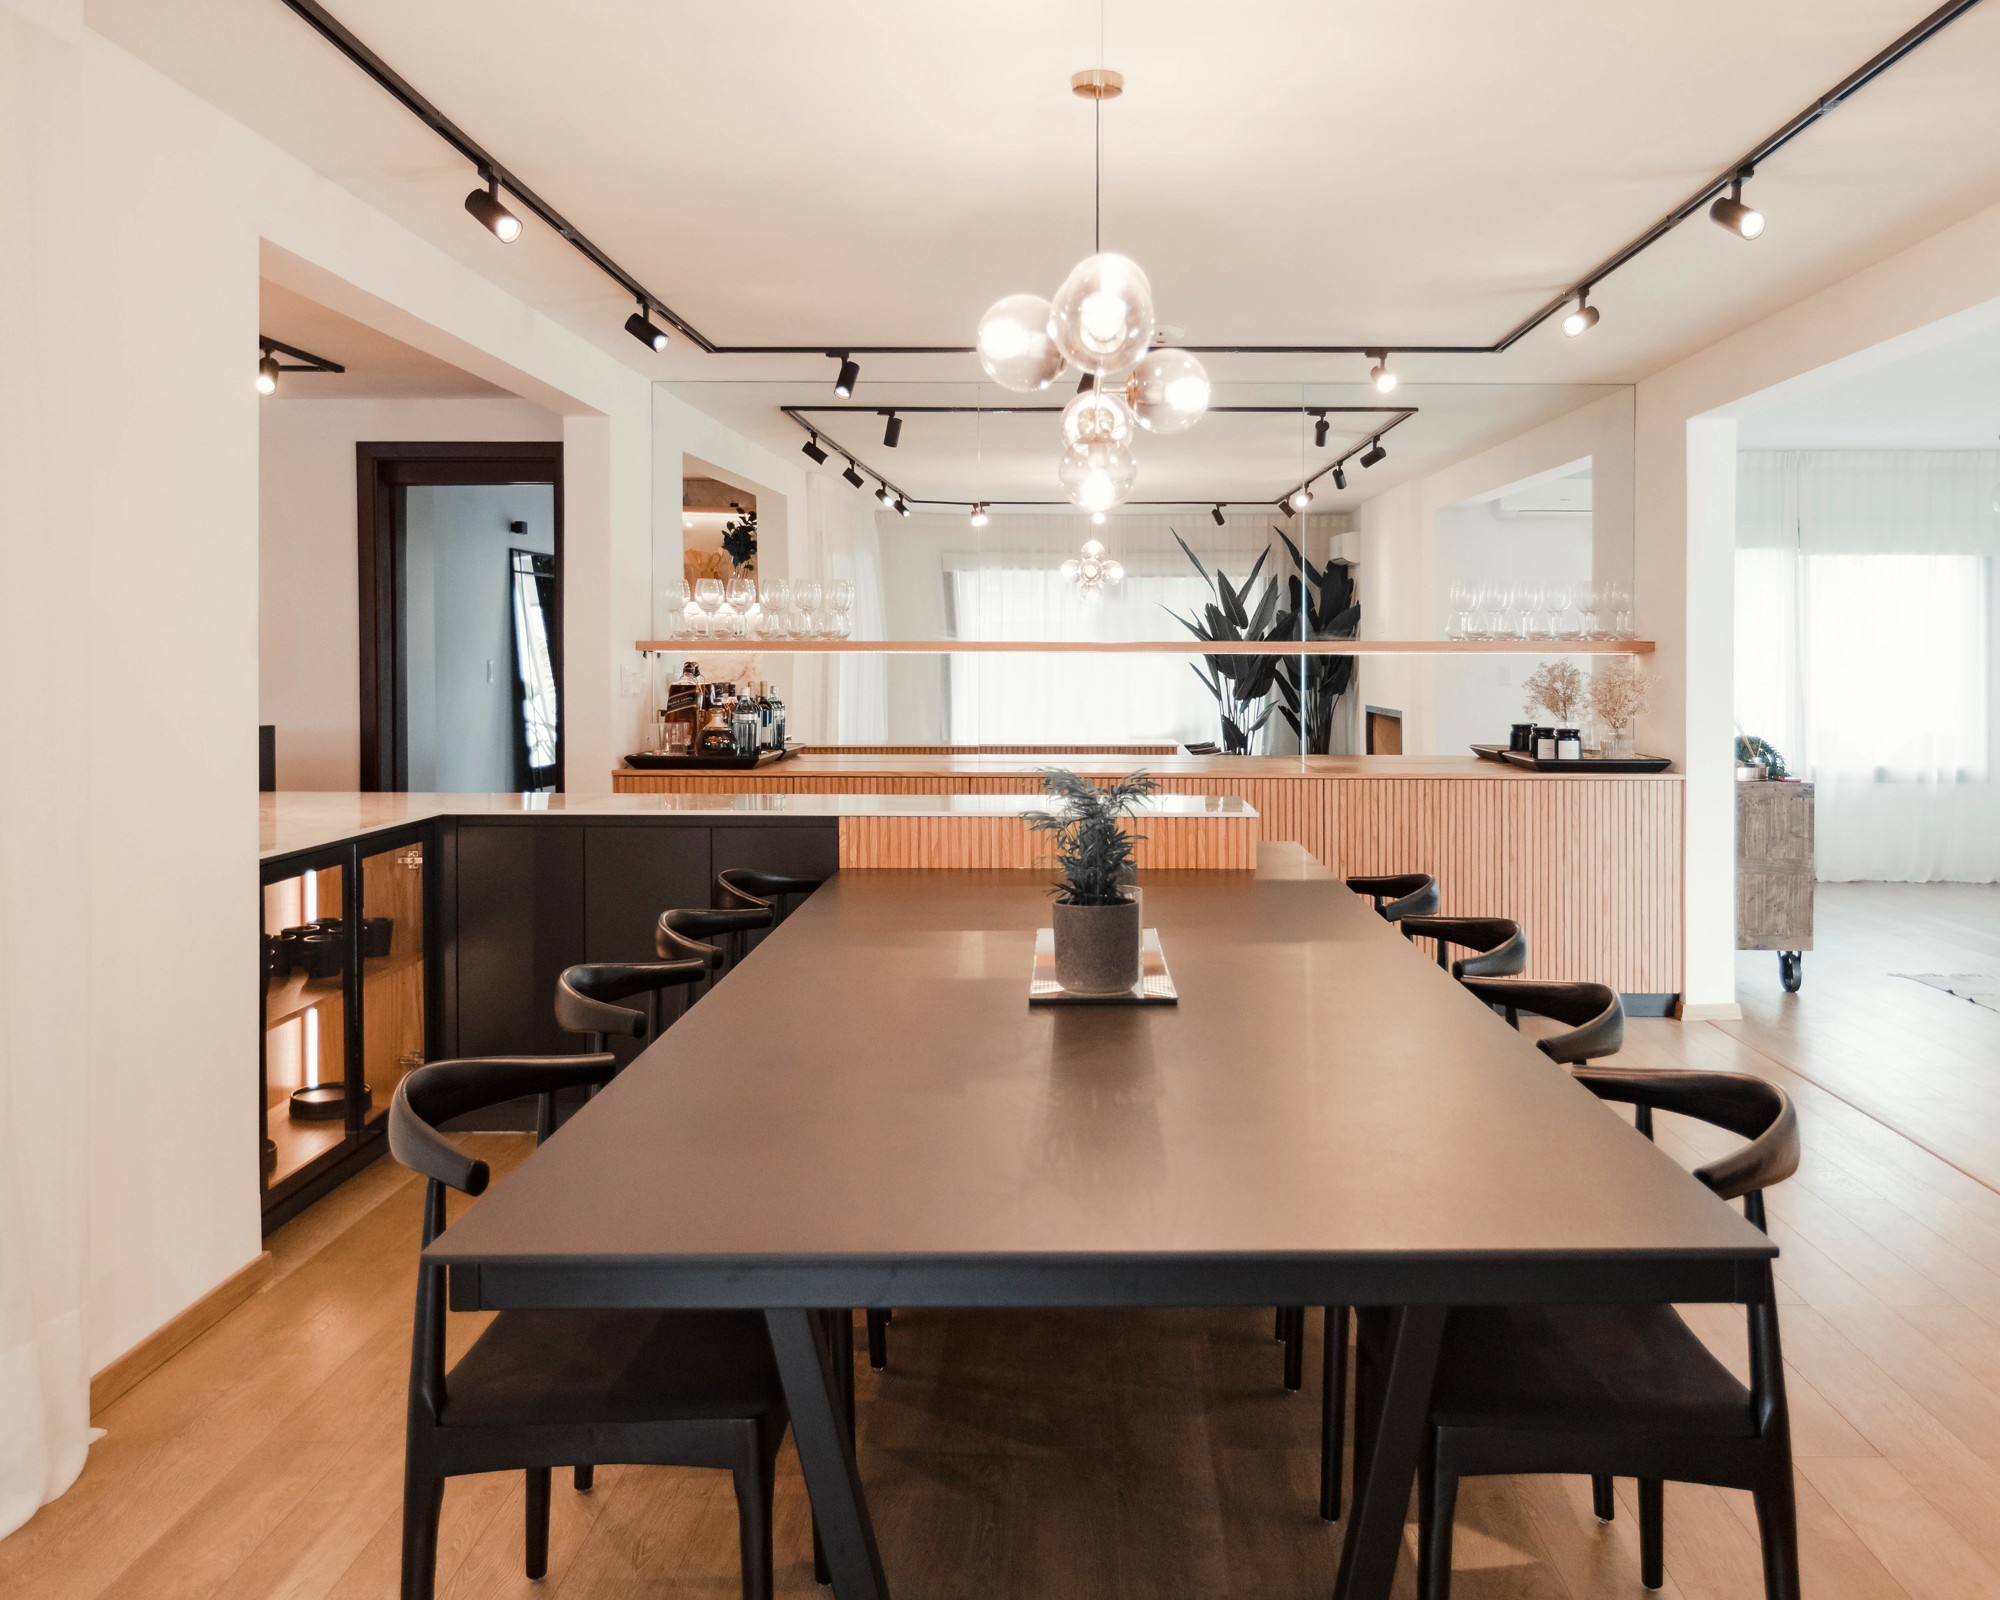 Bildnummer 17 des aktuellen Abschnitts von Kitchen and dining room merged by a precise design von Cosentino Deutschland